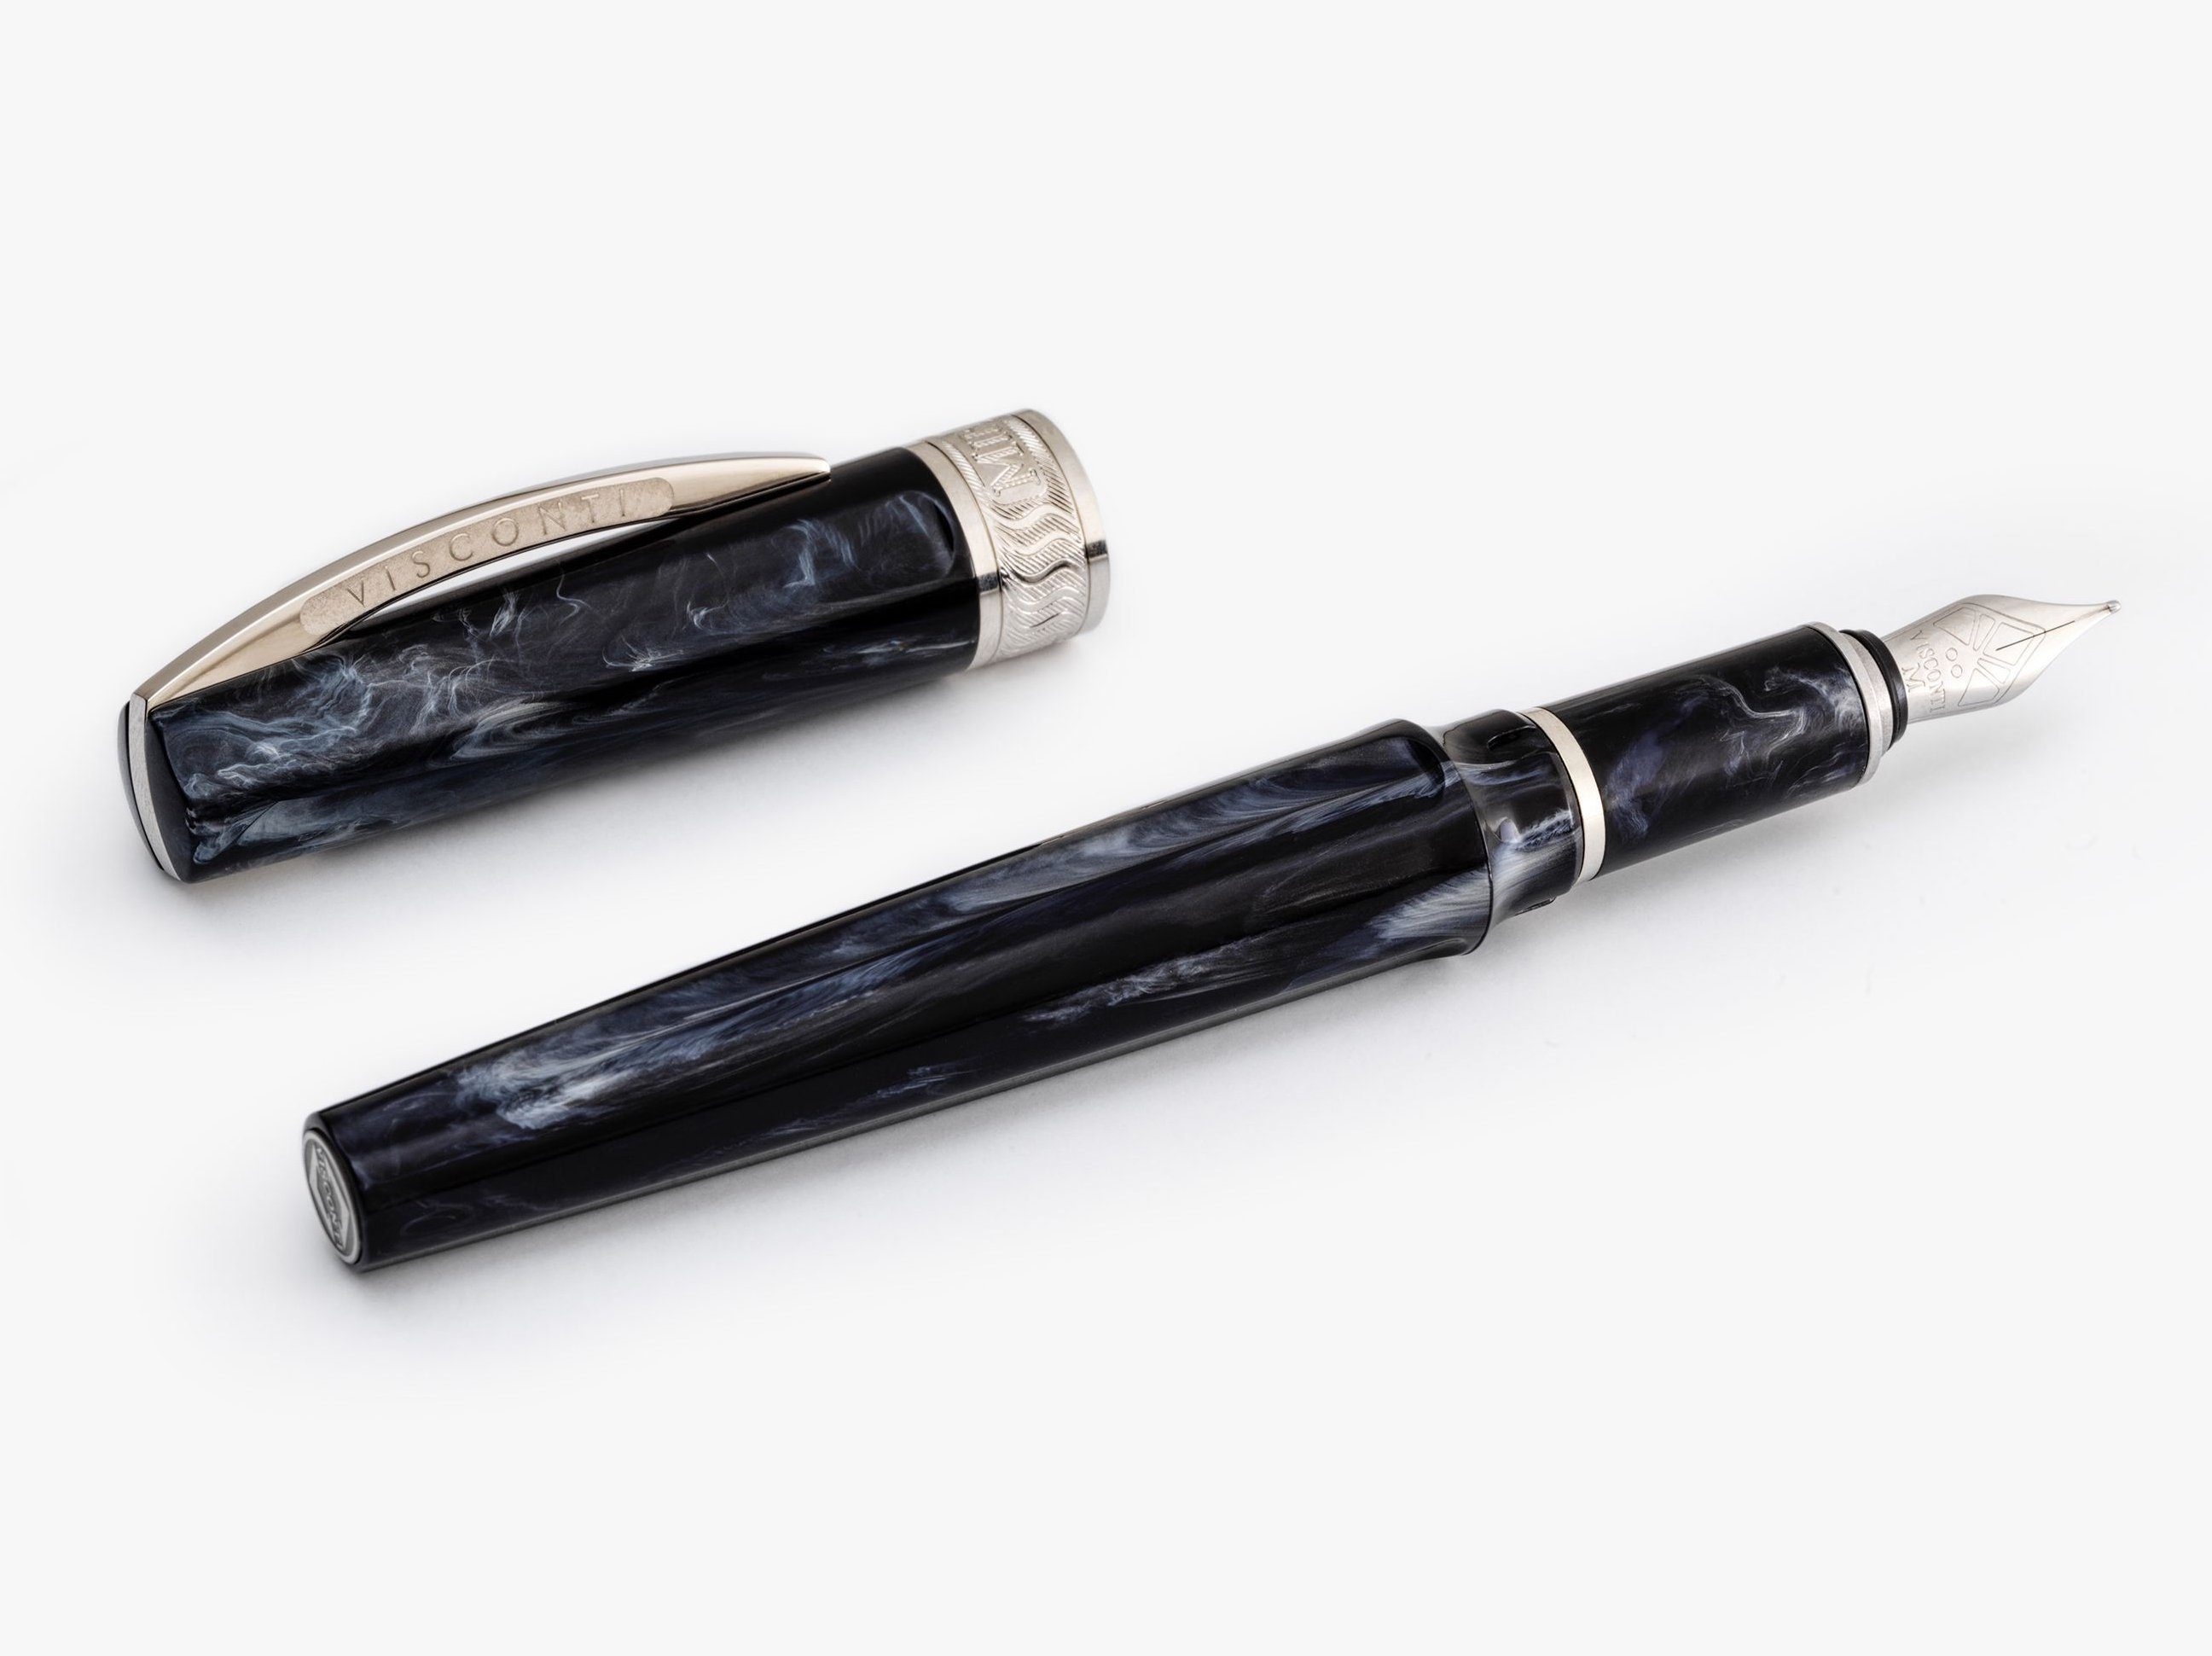 Visconti Füllfederhalter Füllfederhalter Visconti Mirage Black Fountain Pen verschiedene Feders, (kein Set) Schwarz F